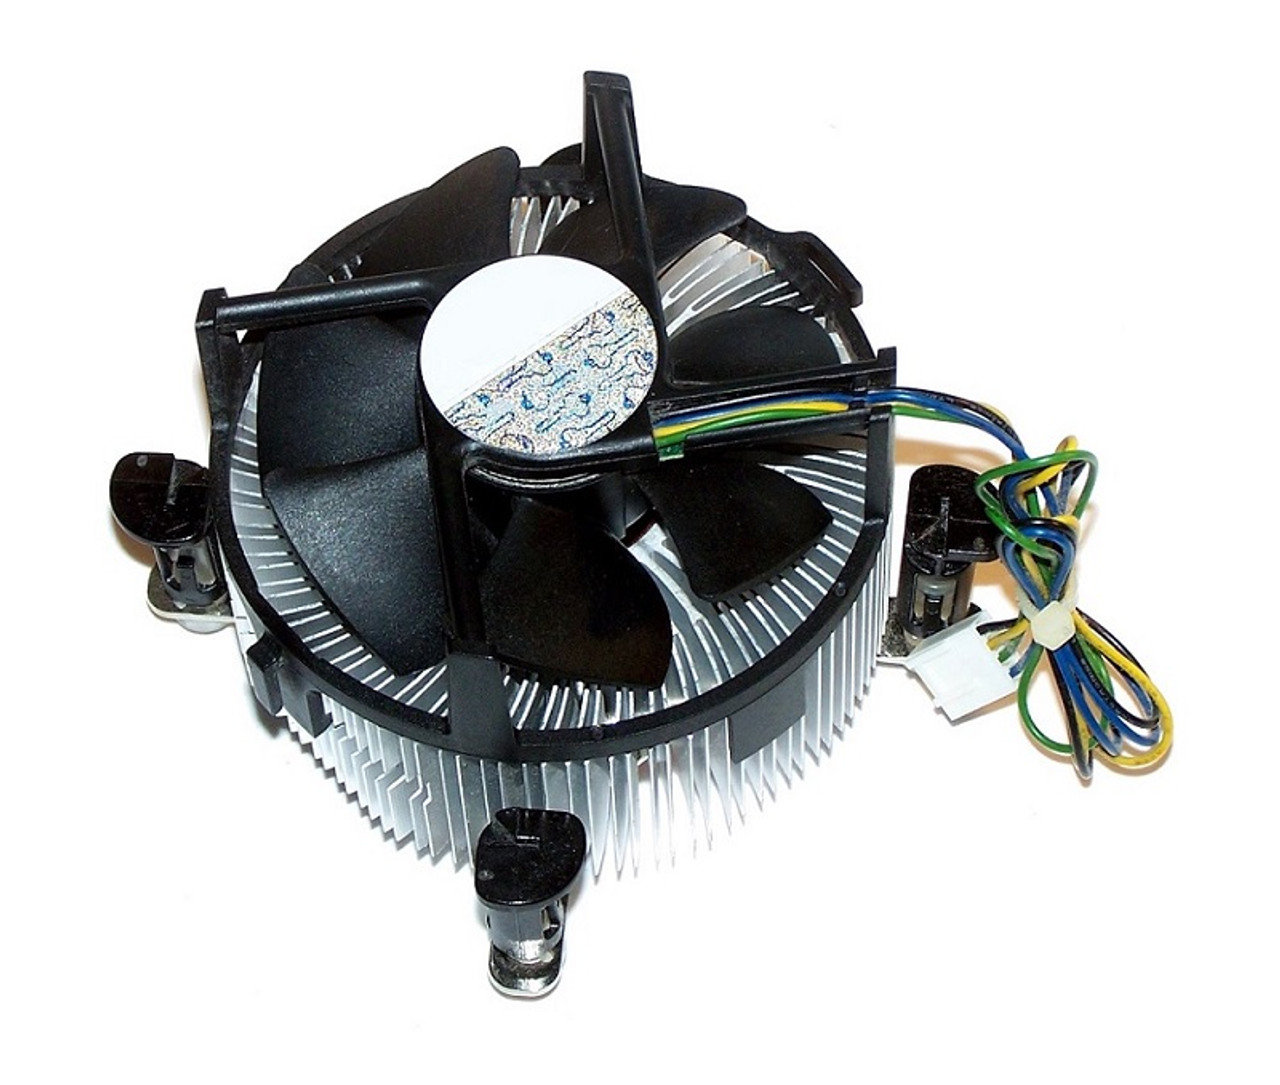 647289-001 - HP Liquid Cooler Heatsink/Fan Assembly for Z420 WorkStation